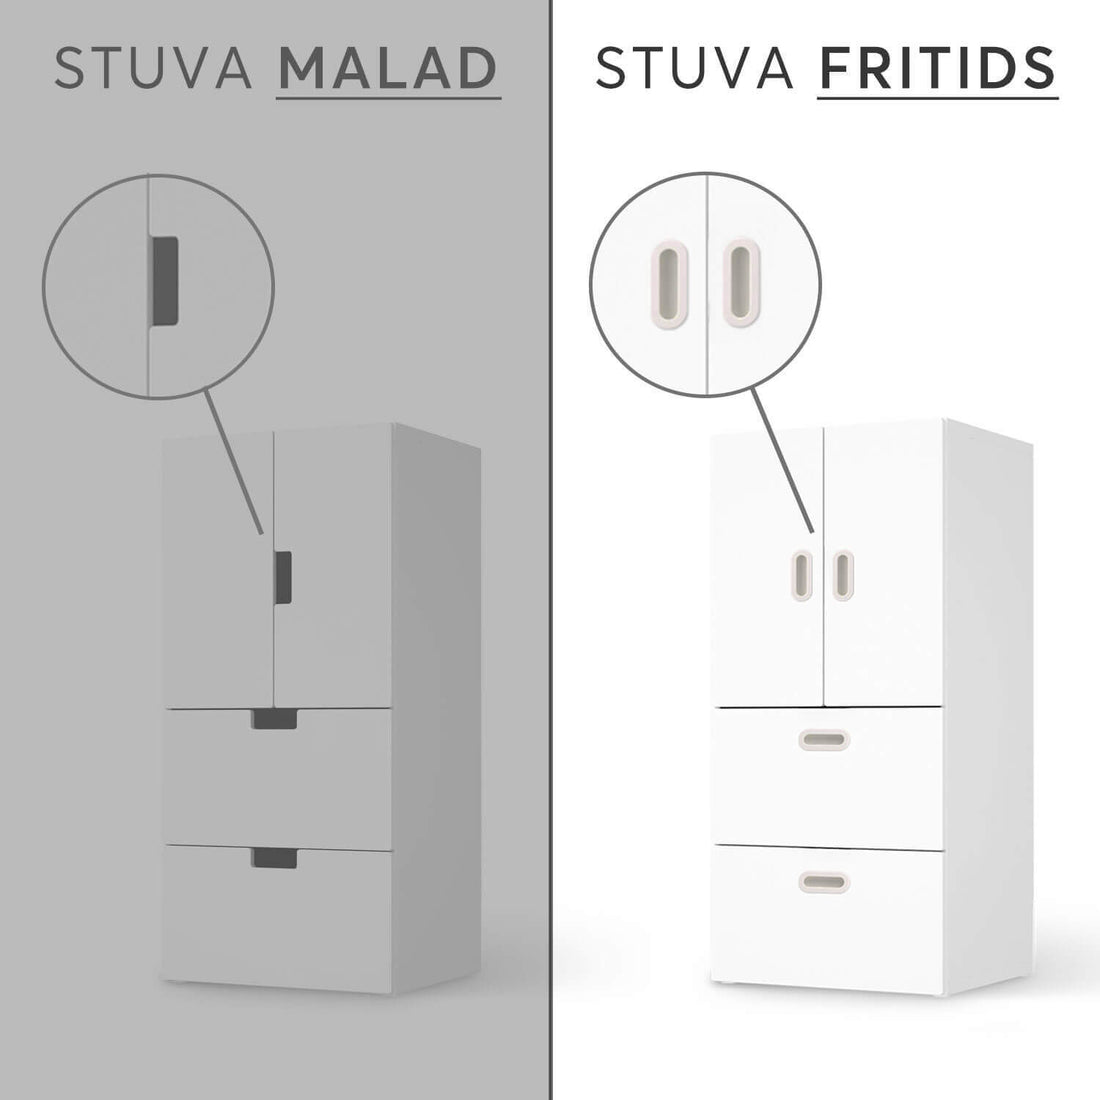 Vergleich IKEA Stuva Fritids / Malad - Teddy und Mond